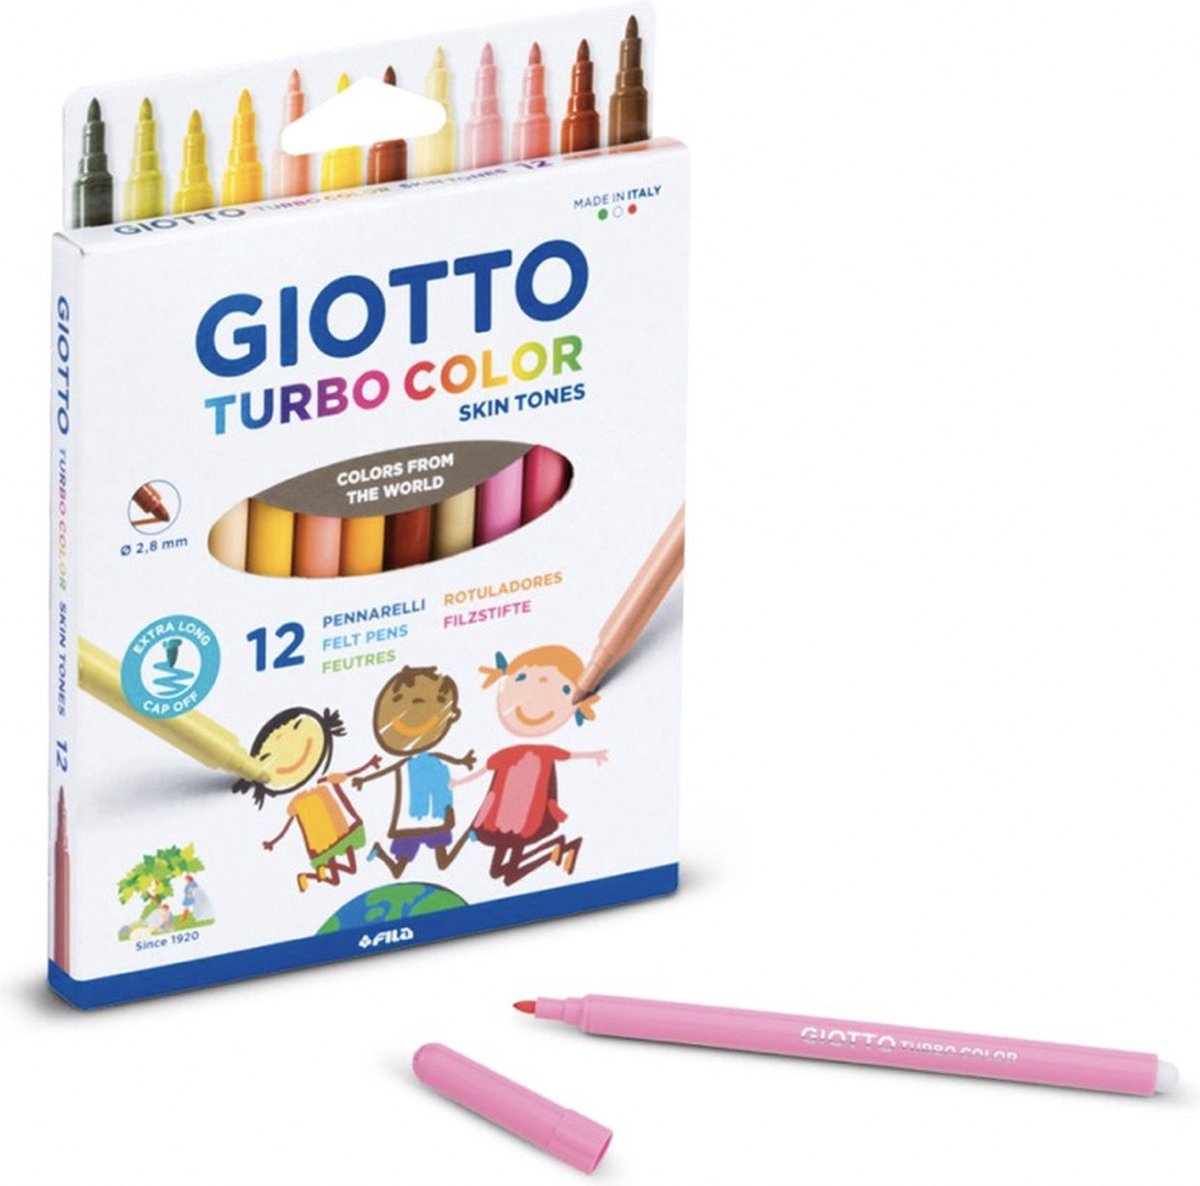 Giotto huidskleur stiften - 12 stuks - Huidskleurstiften - Skintone pencils - Turbo Color stiften - Nude Kleuren